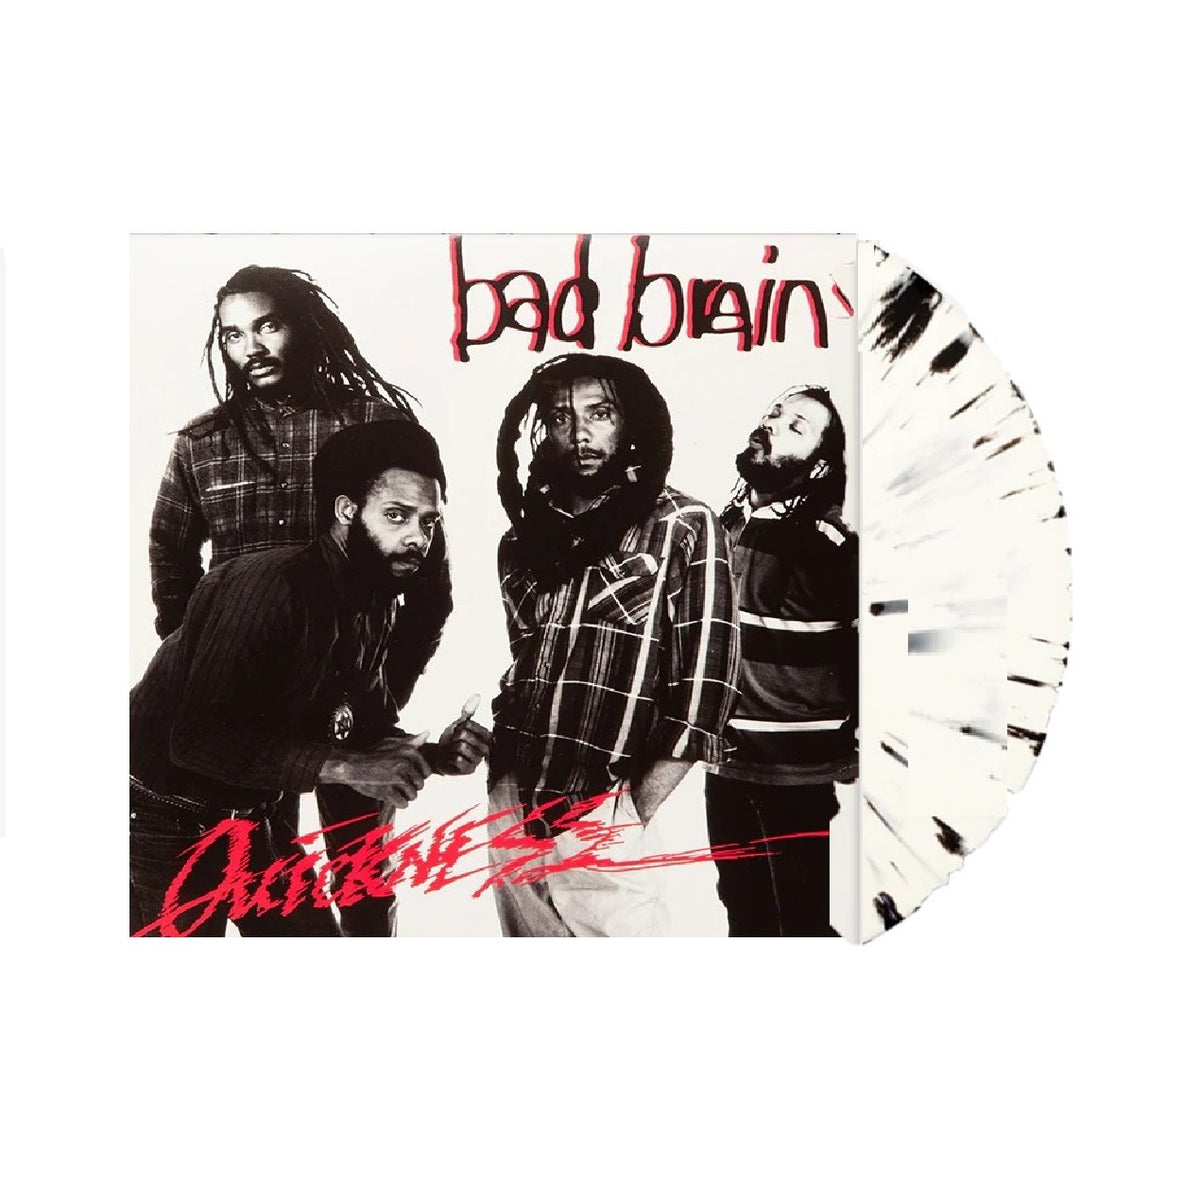 Bad Brains-Bad Brains LP (Color) Vinyl